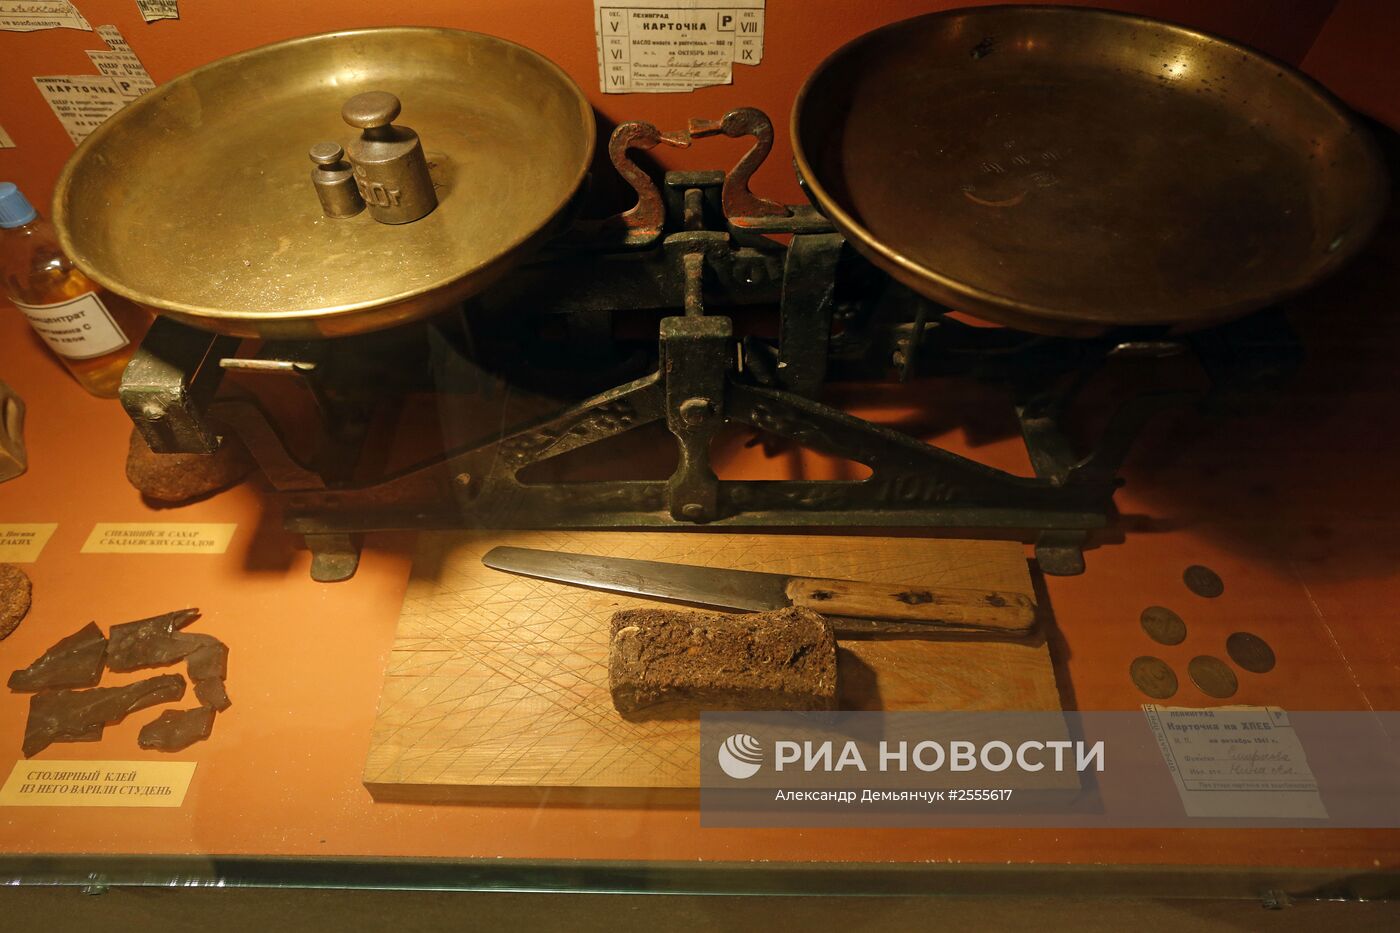 Мемориальный музей обороны и блокады Ленинграда в Санкт-Петербурге